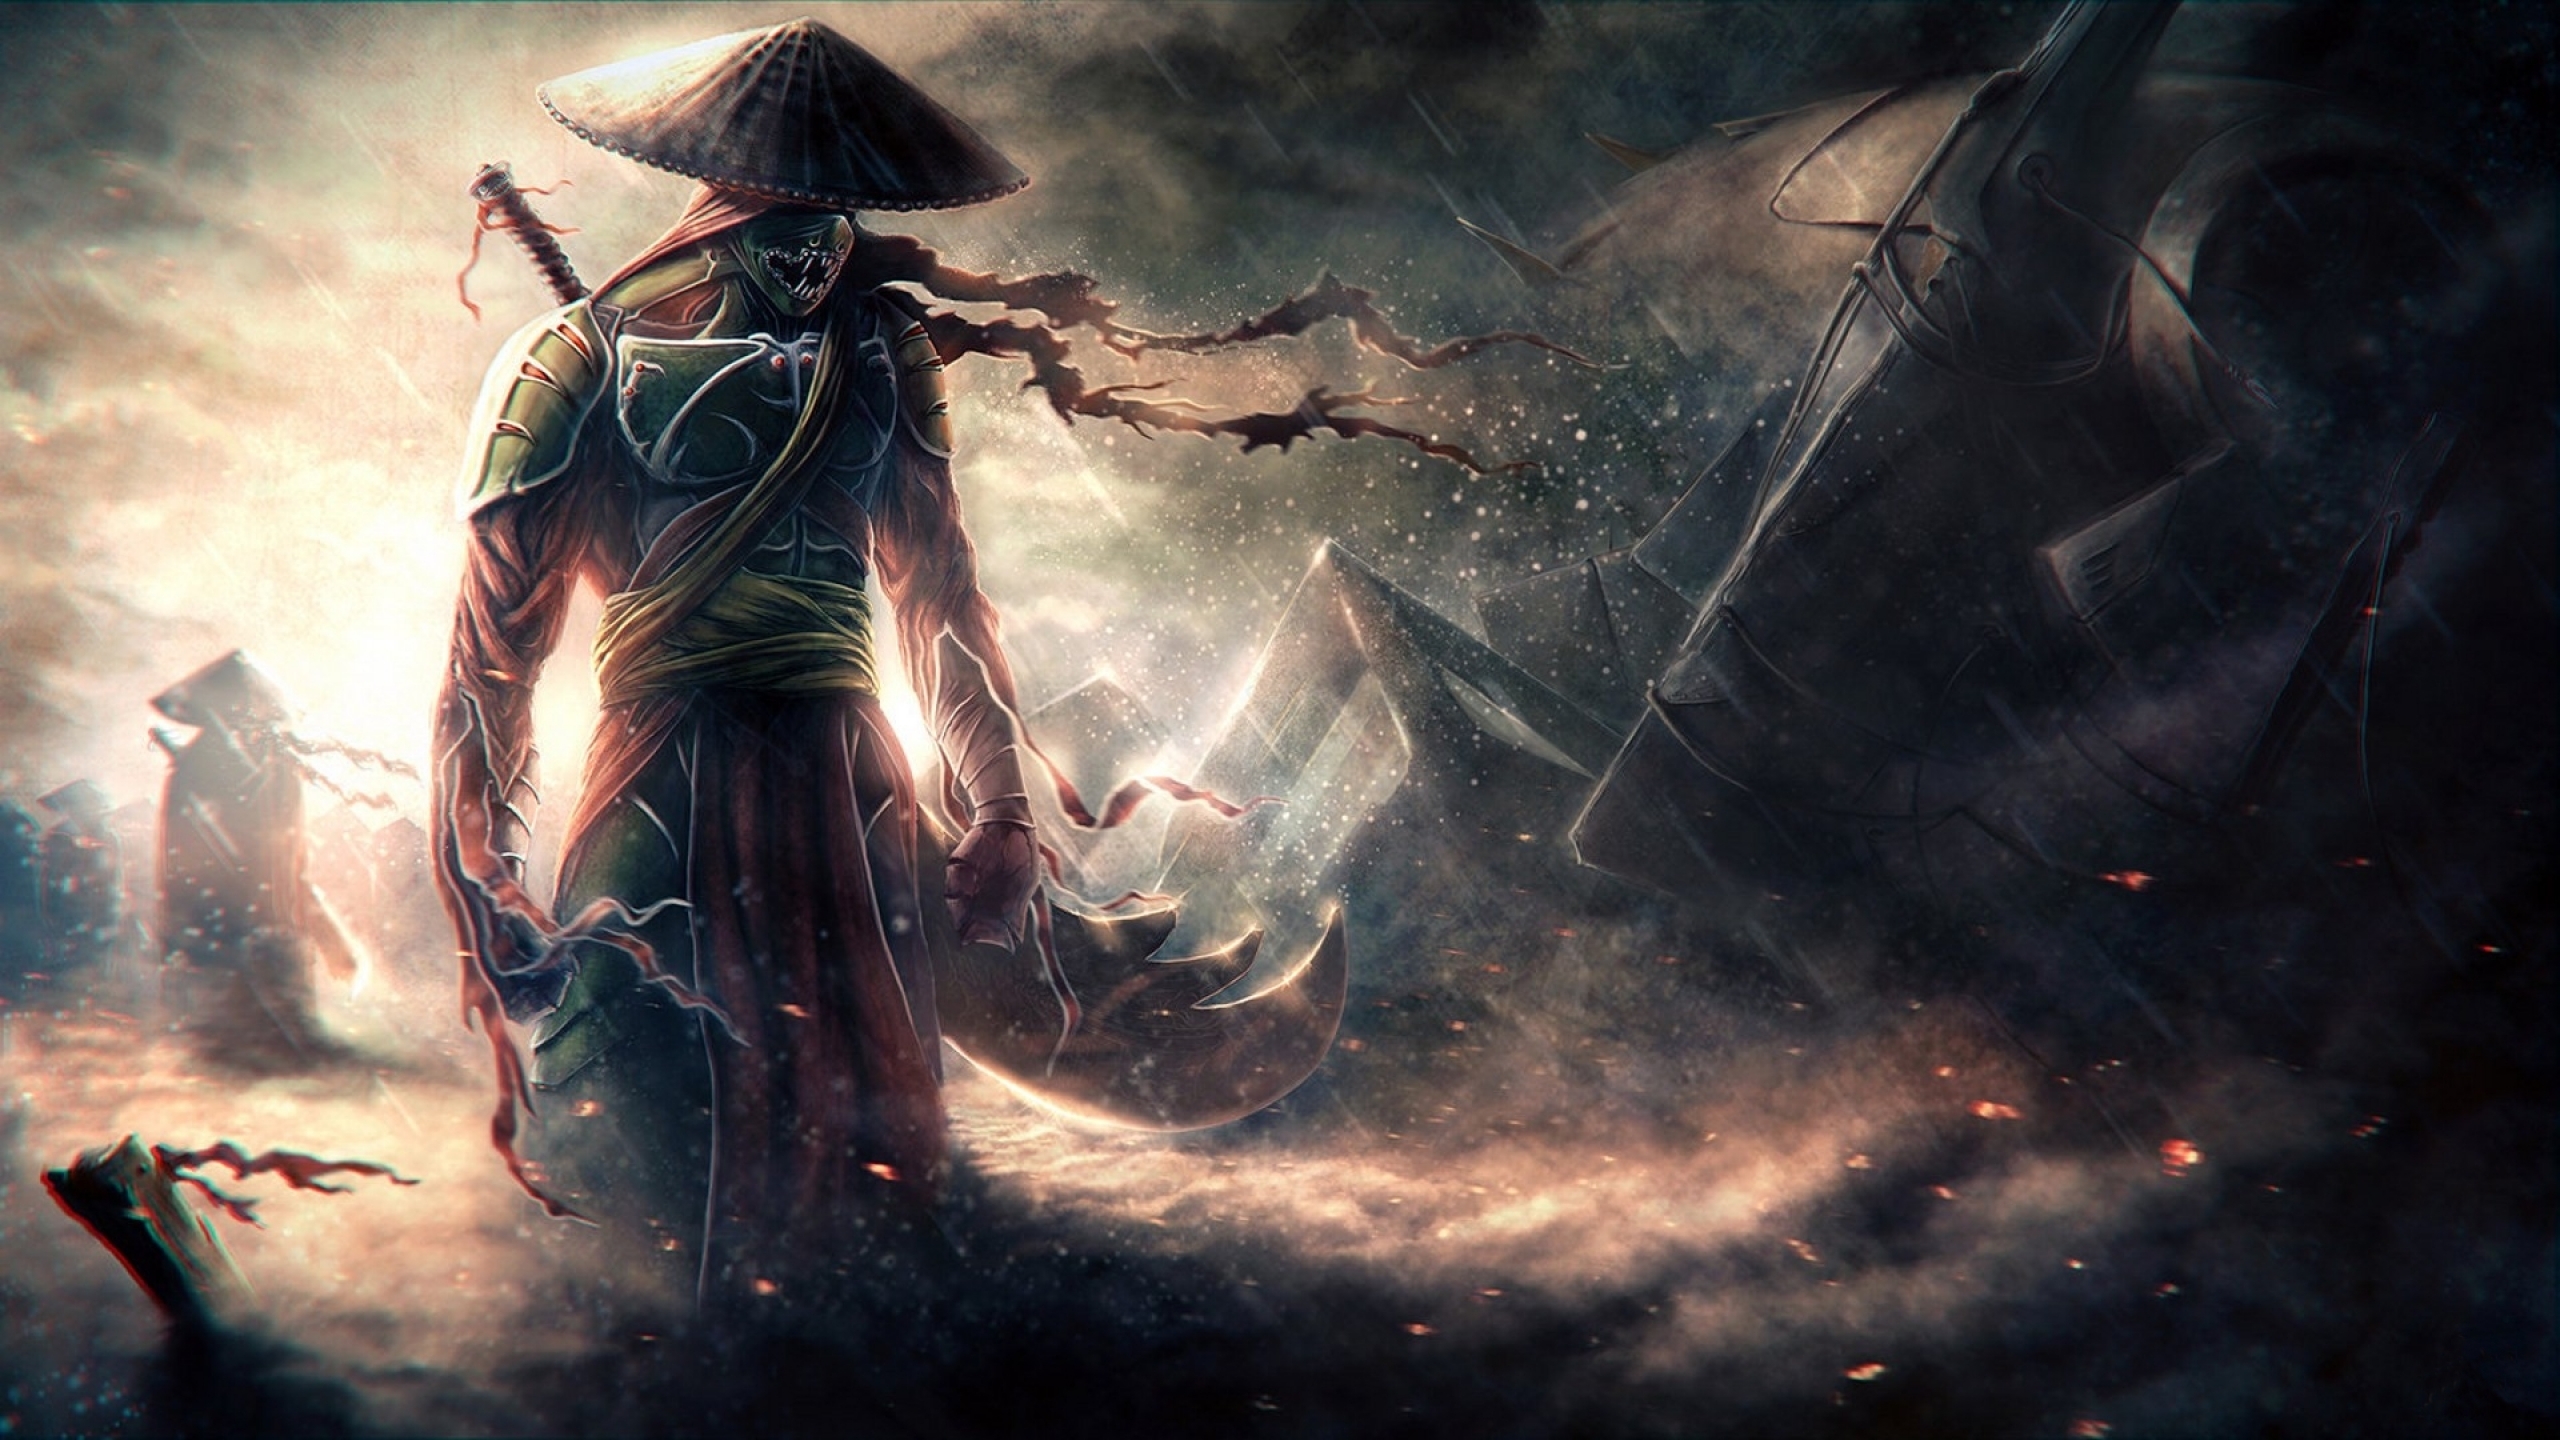 fondo de pantalla de guerrero samurai,juego de acción y aventura,cg artwork,demonio,ilustración,oscuridad